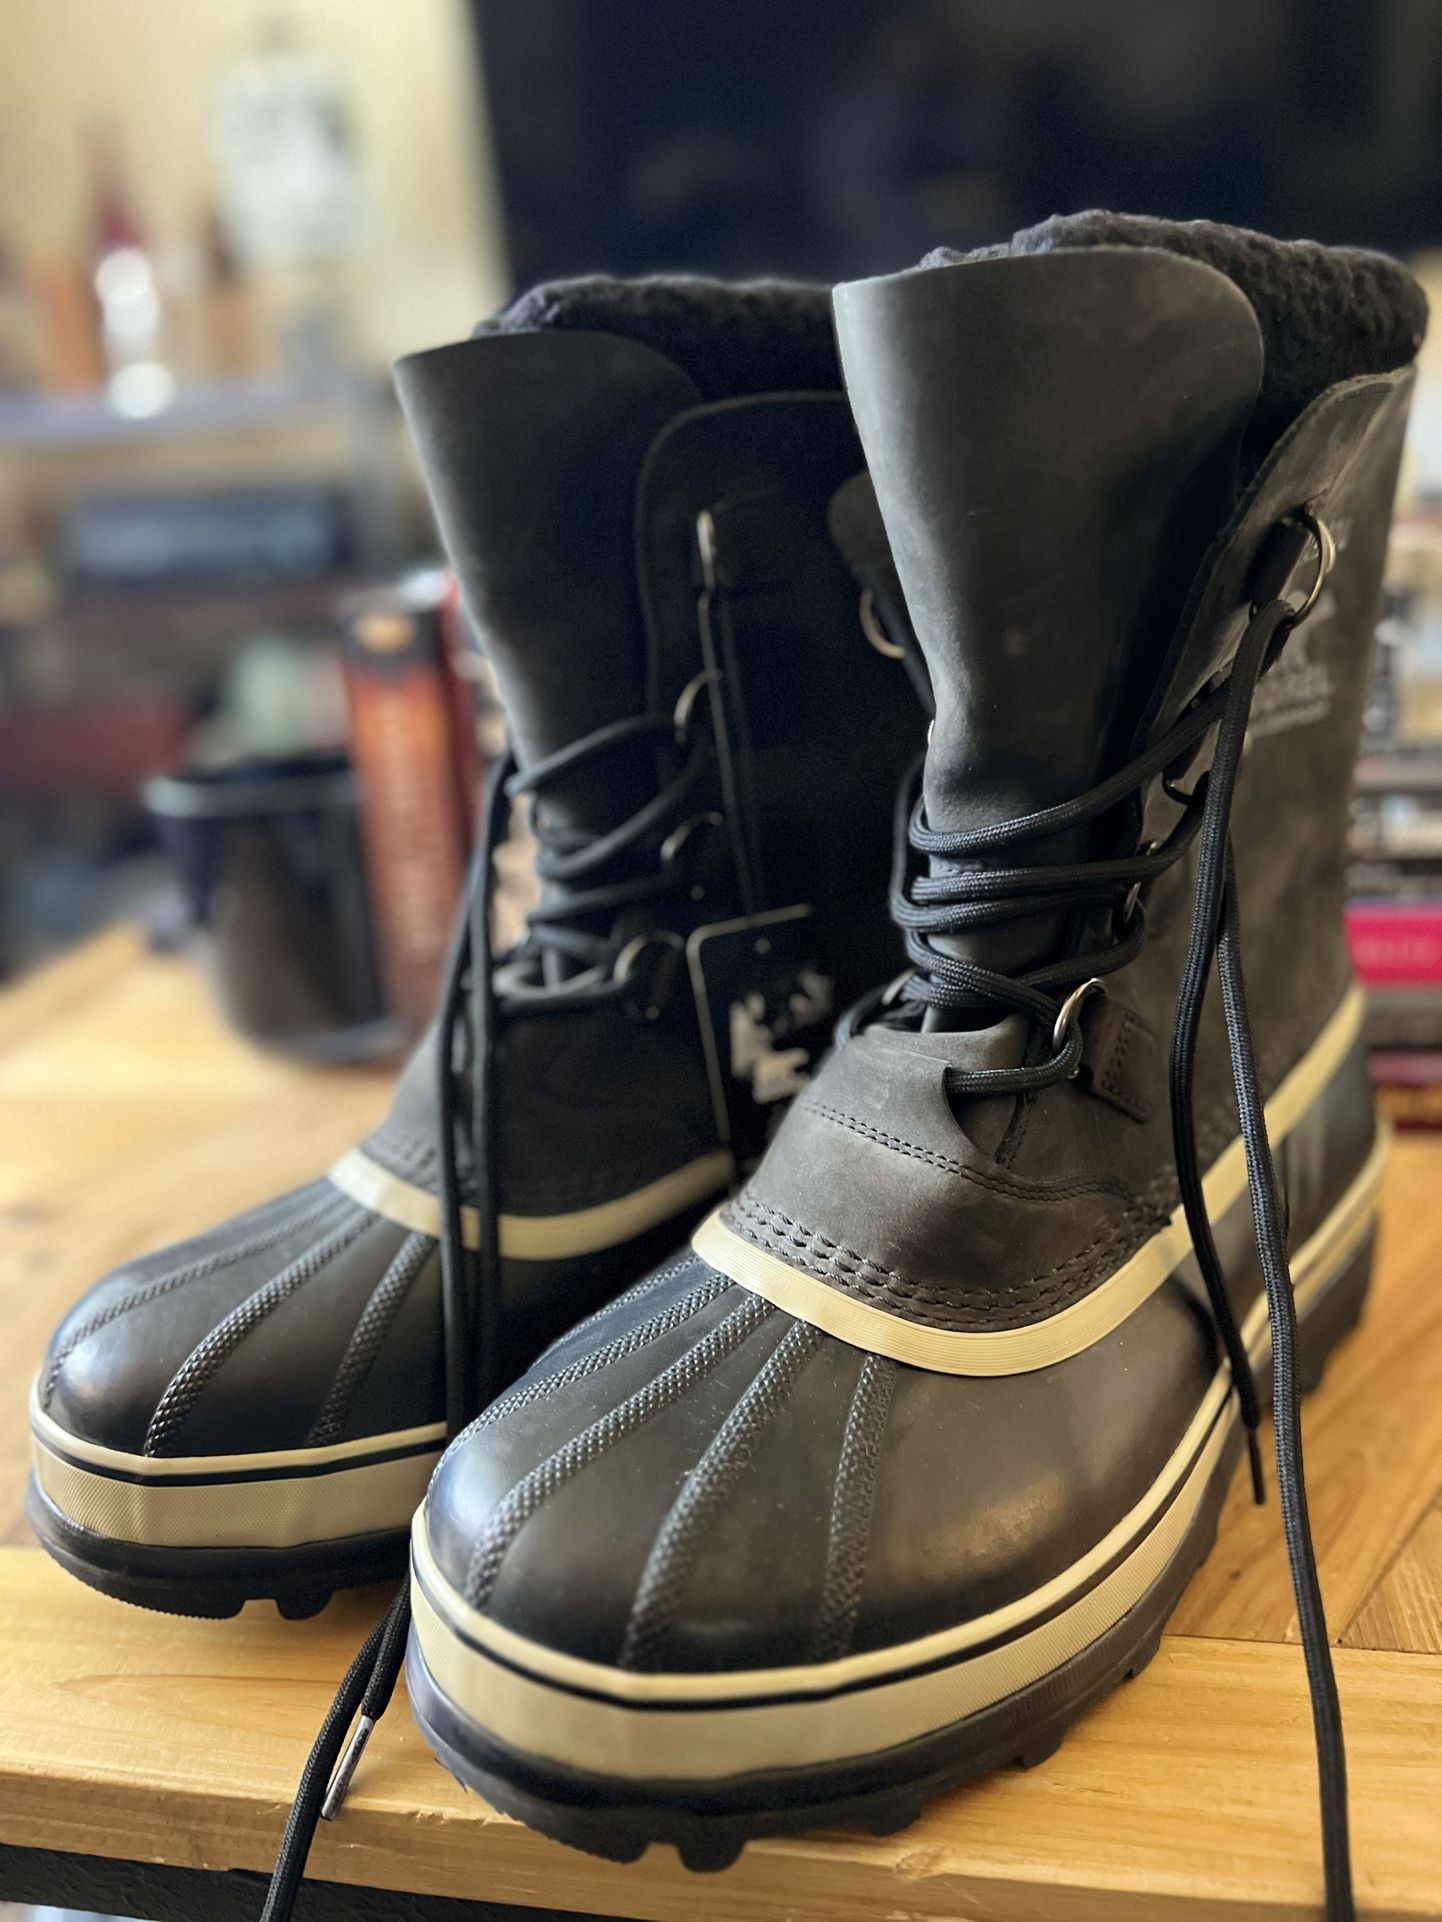 Sorel Caribou Snow Boots Size 12